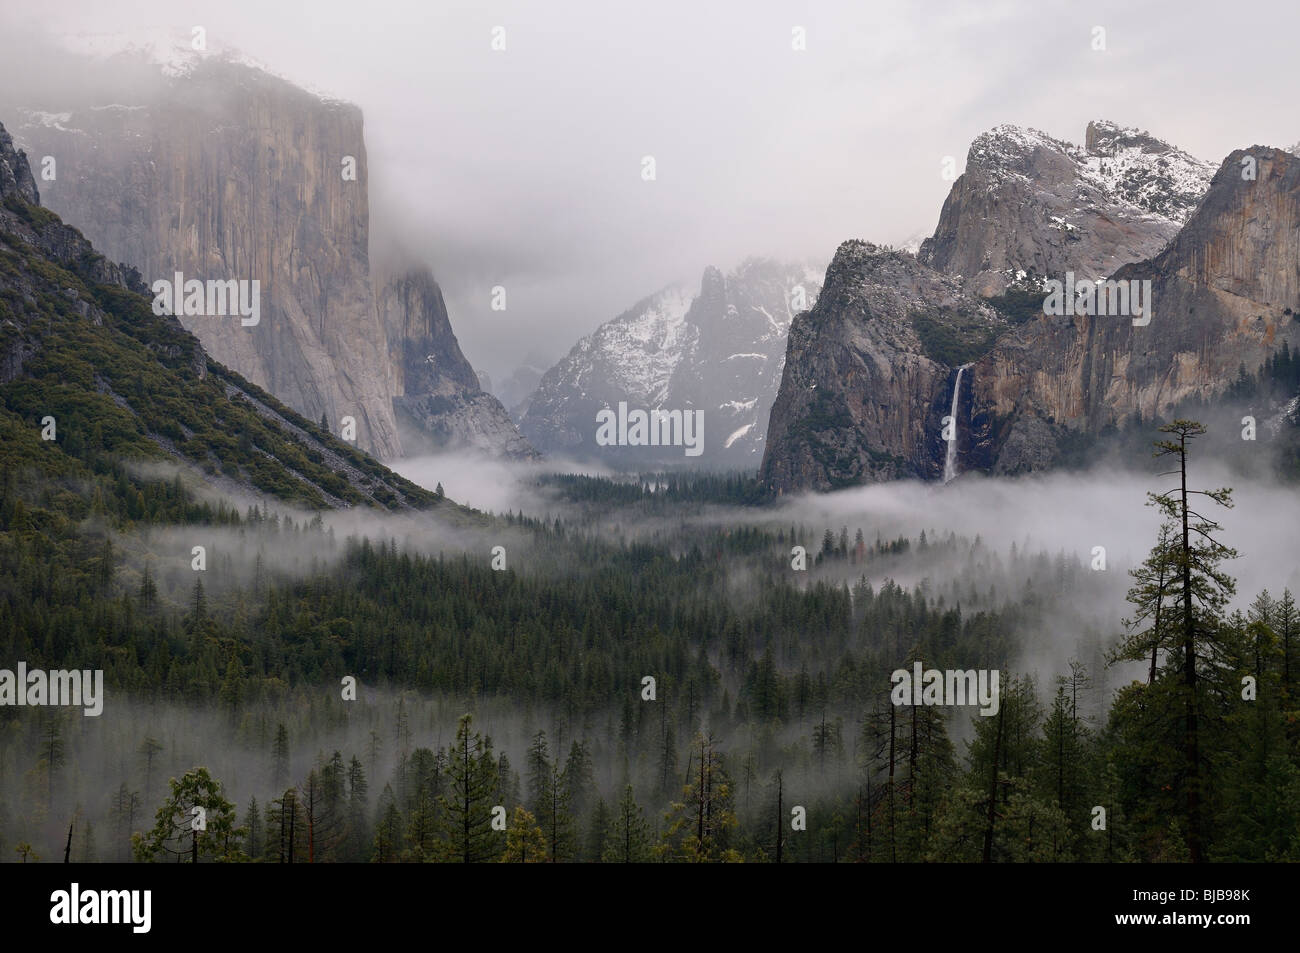 Las nubes y la niebla en el valle de Yosemite con bridalveil fall después de una tormenta de lluvia en invierno visto desde la vista de túnel de Yosemite National Park California ee.uu. Foto de stock